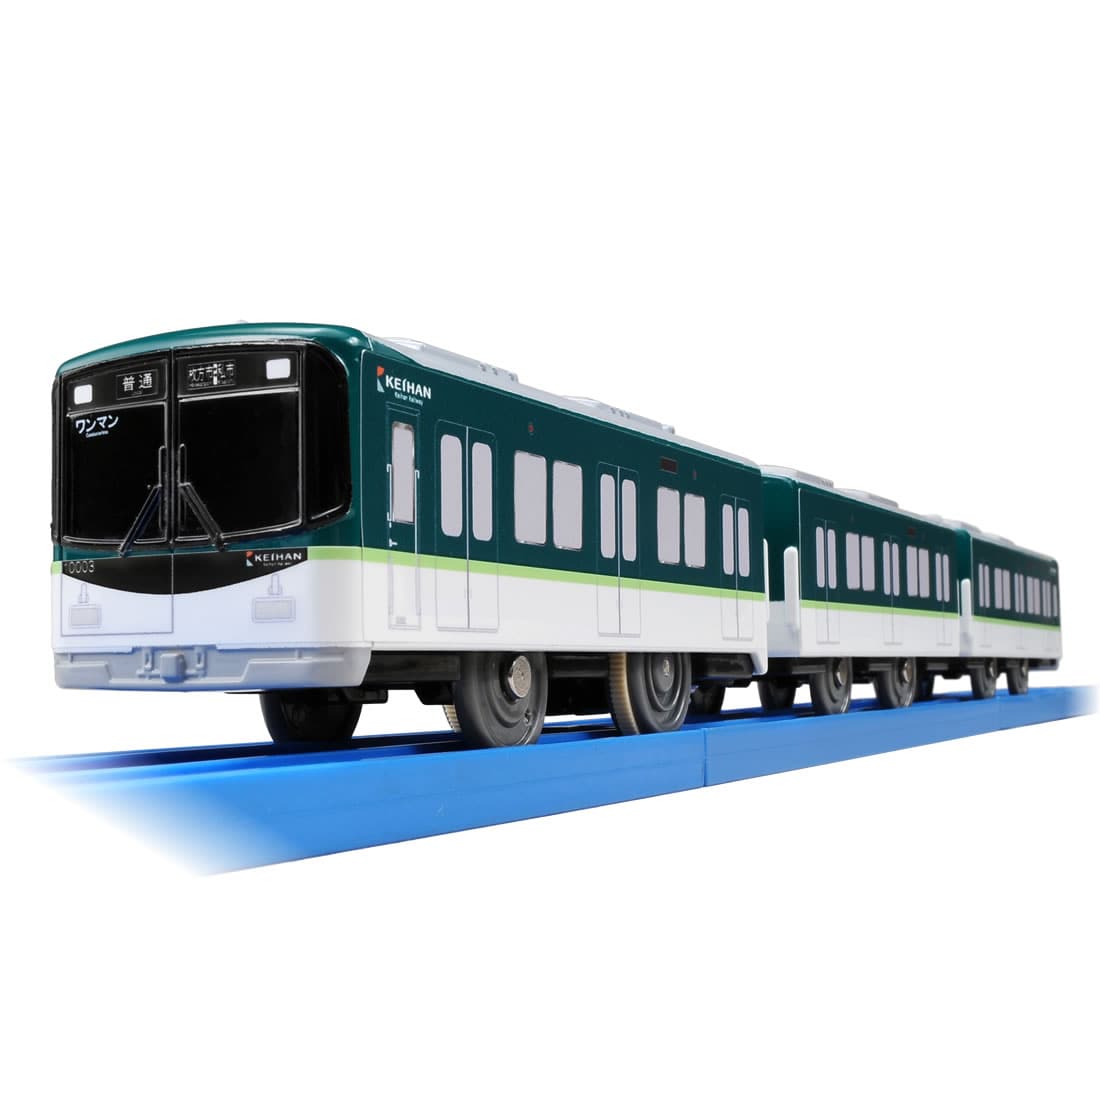 楽天市場 プラレール ぼくもだいすき たのしい列車シリーズ 京阪電車 系 タカラトミー エルエルハット